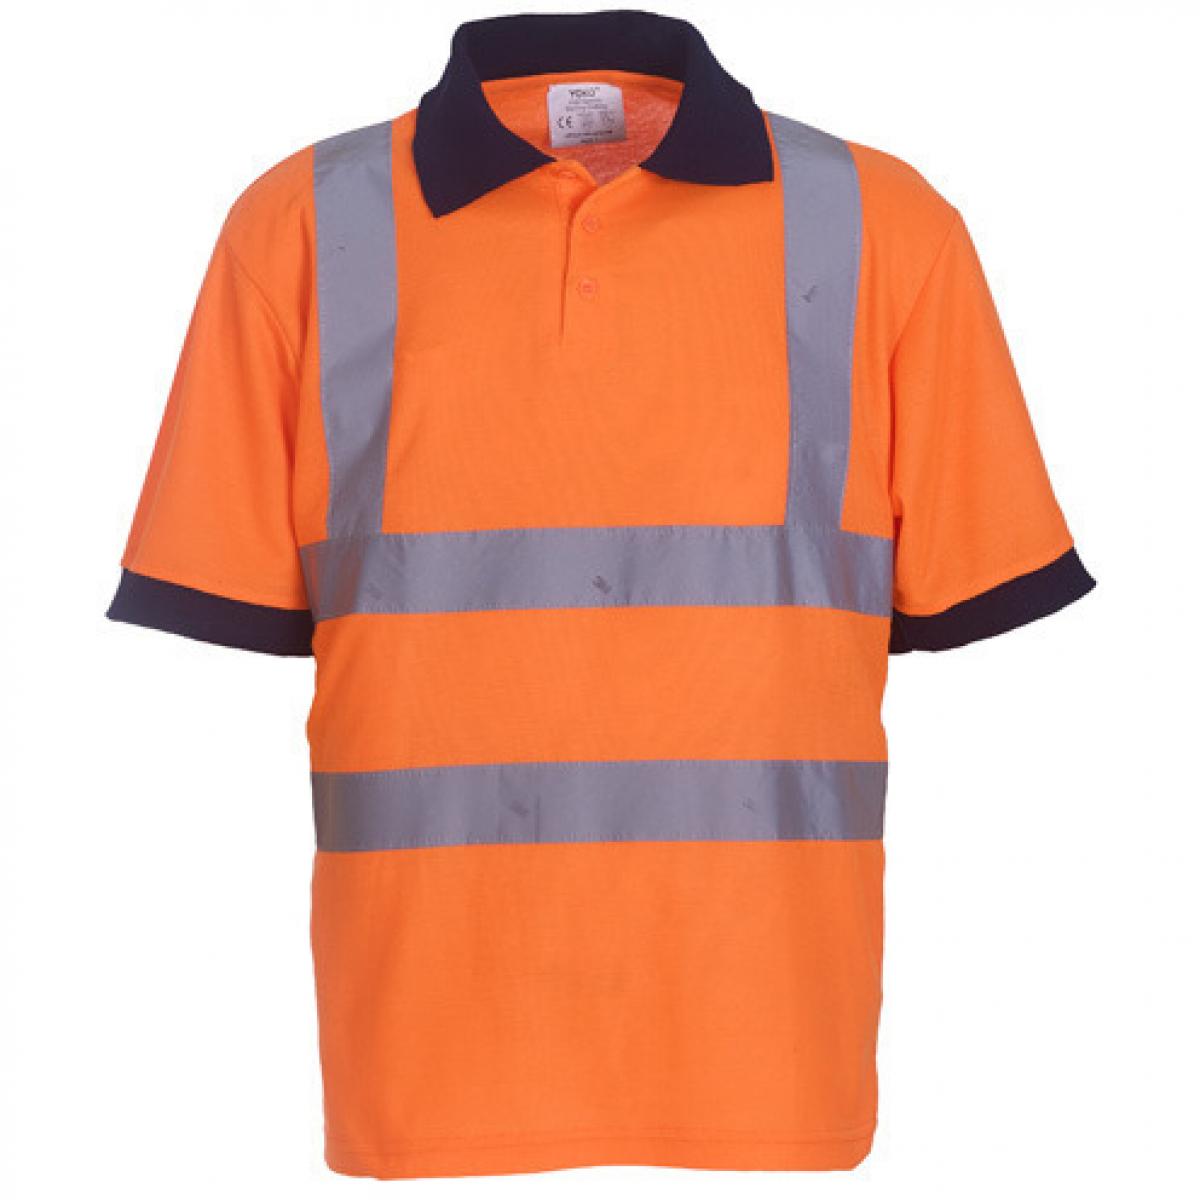 Hersteller: YOKO Herstellernummer: HVJ210 Artikelbezeichnung: Herren Sicherheits Polo Shirt EN ISO 20471 bis 6XL Farbe: Hi-Vis Orange